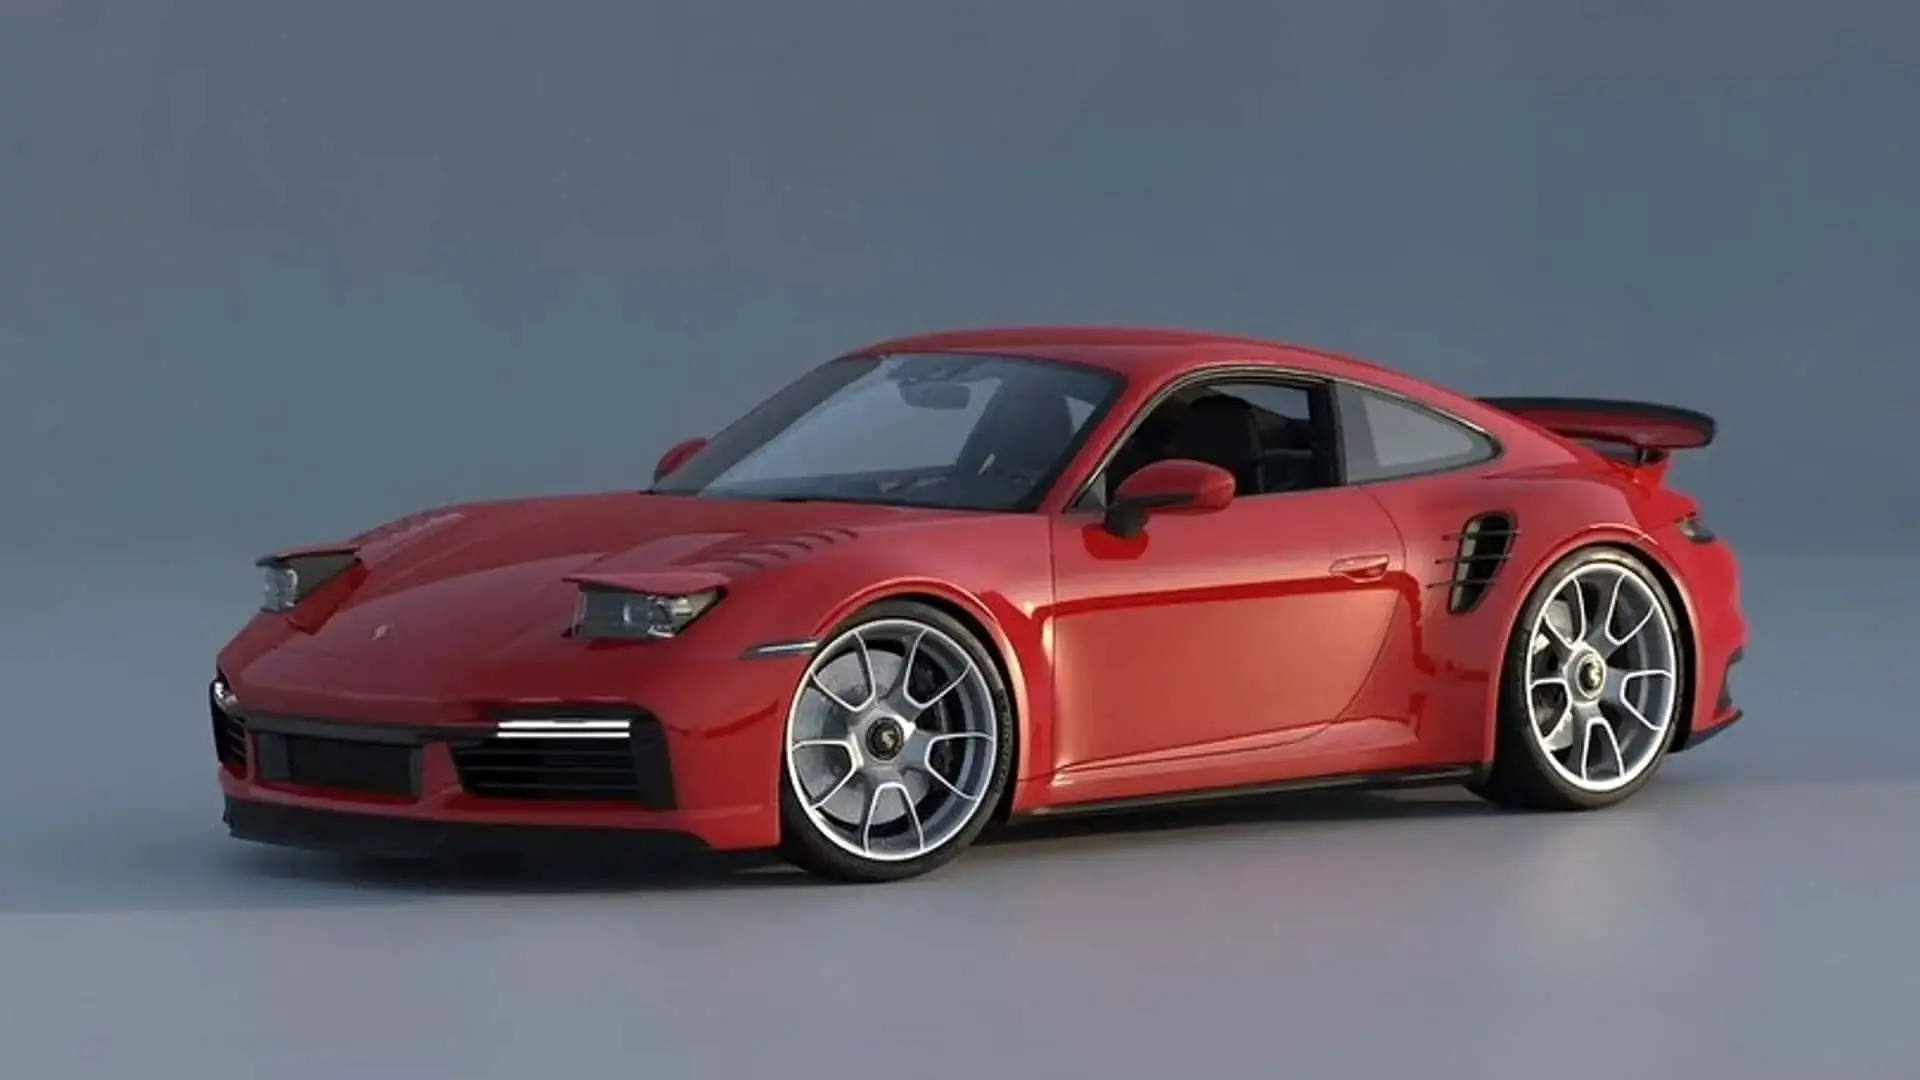 The Porsche 911's pop-up headlights enhance its appearance even further